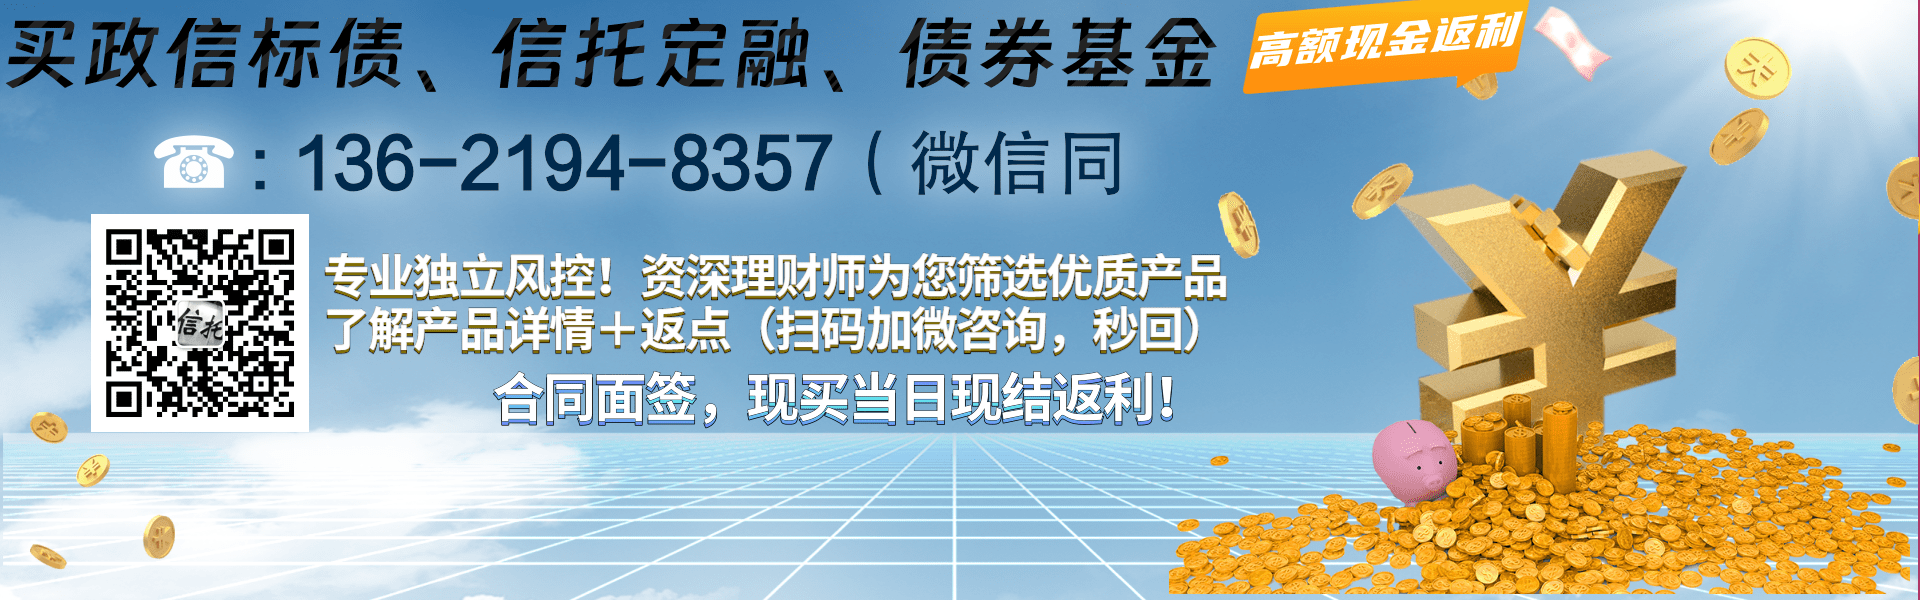 大央企信托-ZX12号成都青白江集合信托计划